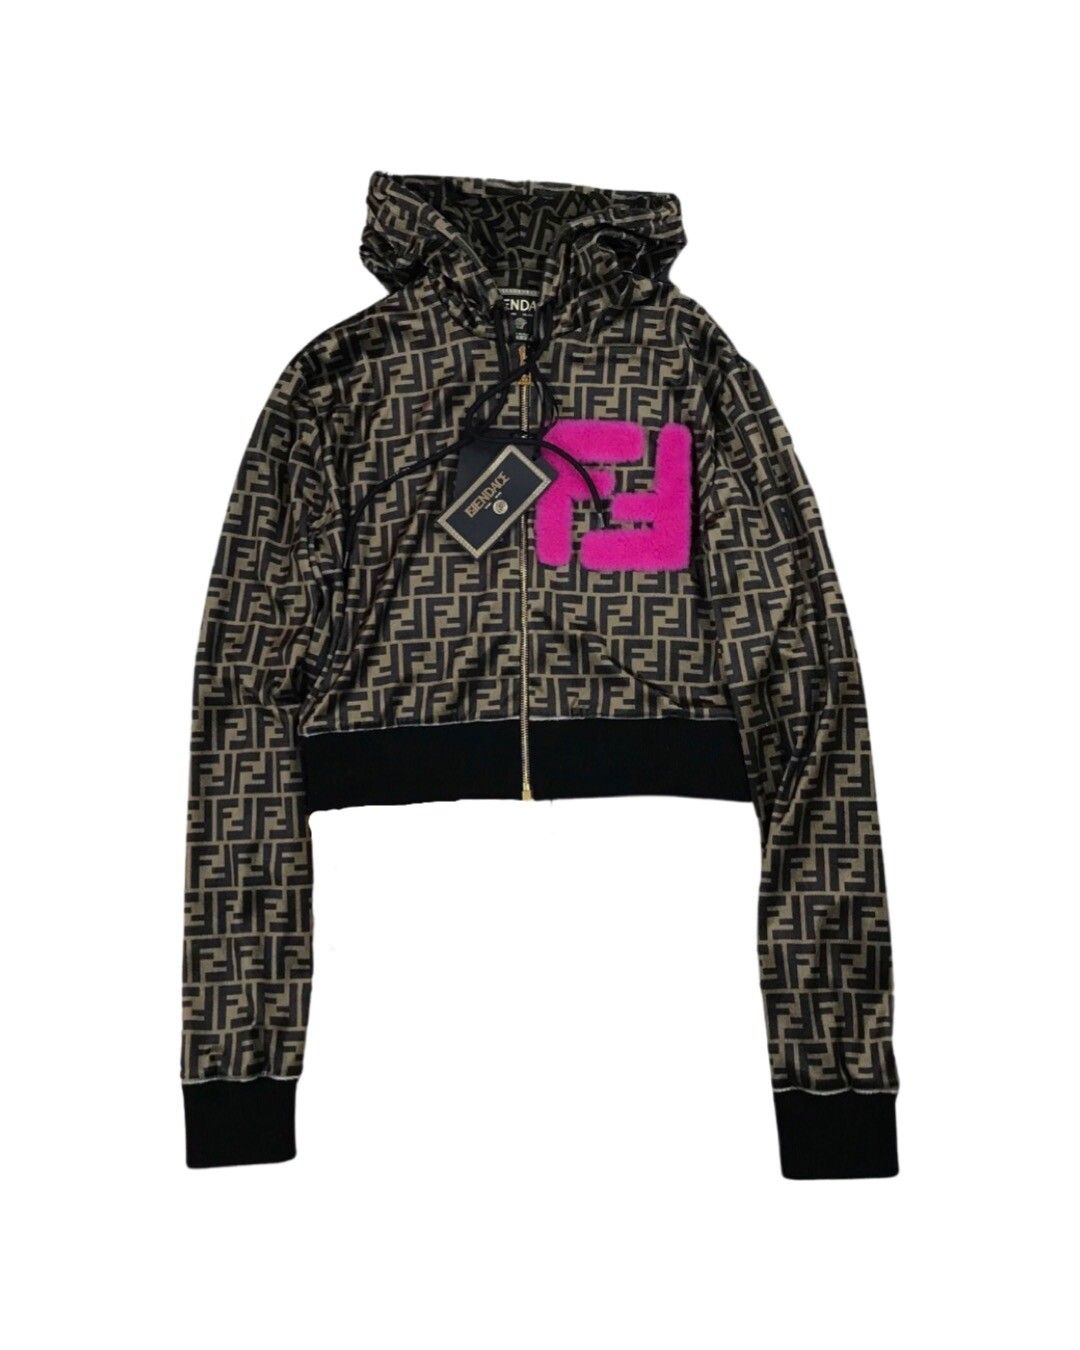 Fendace FF logo crop zip up hoodie - 1